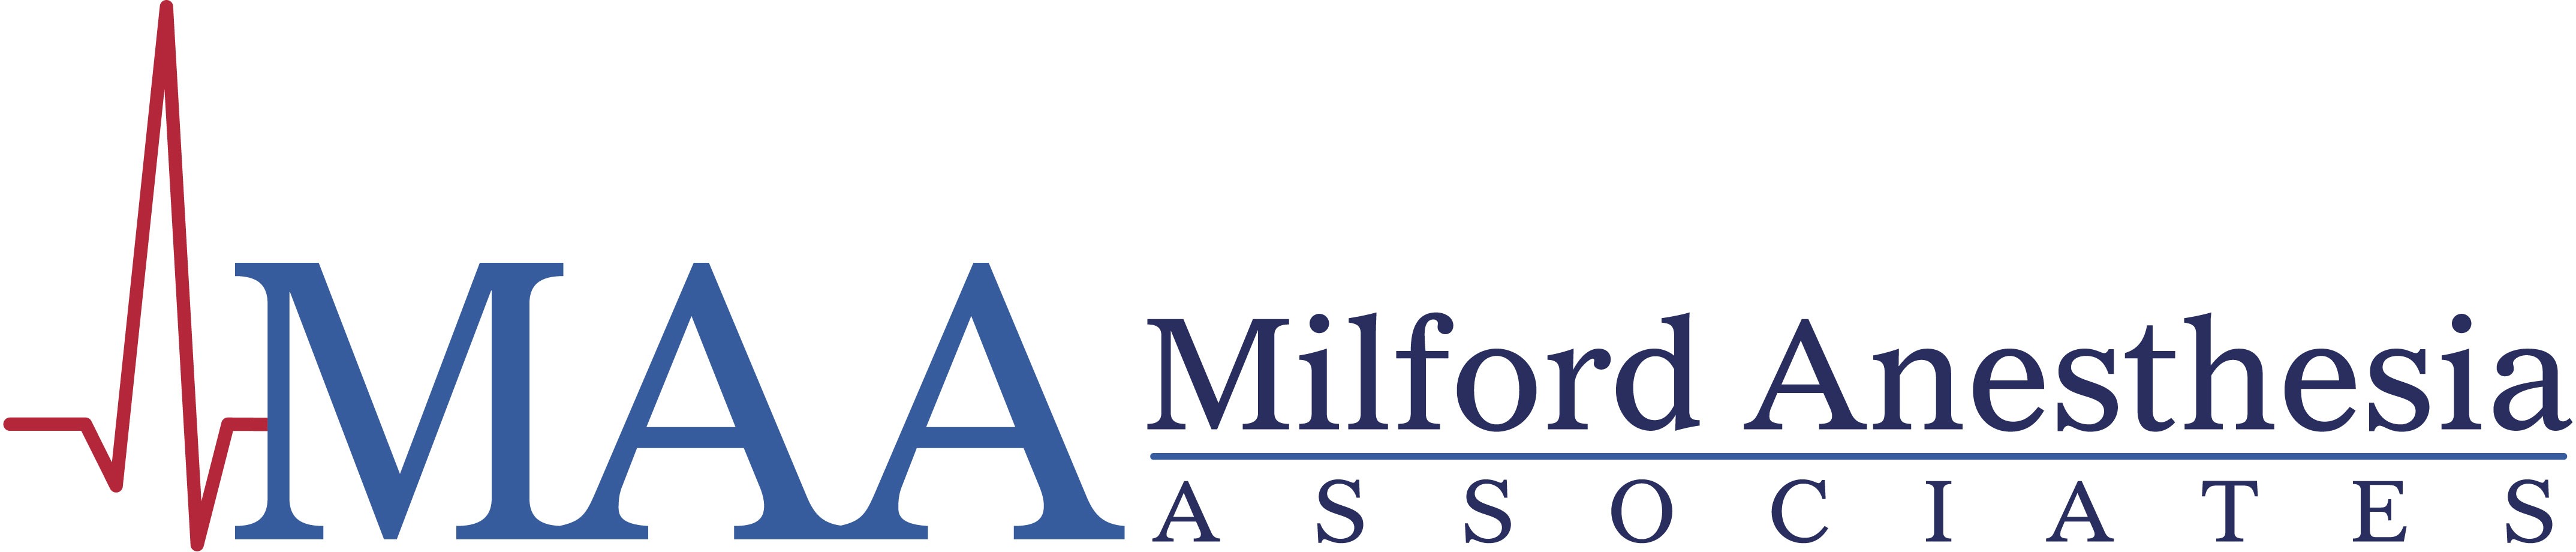 milford anesthesia associates logo